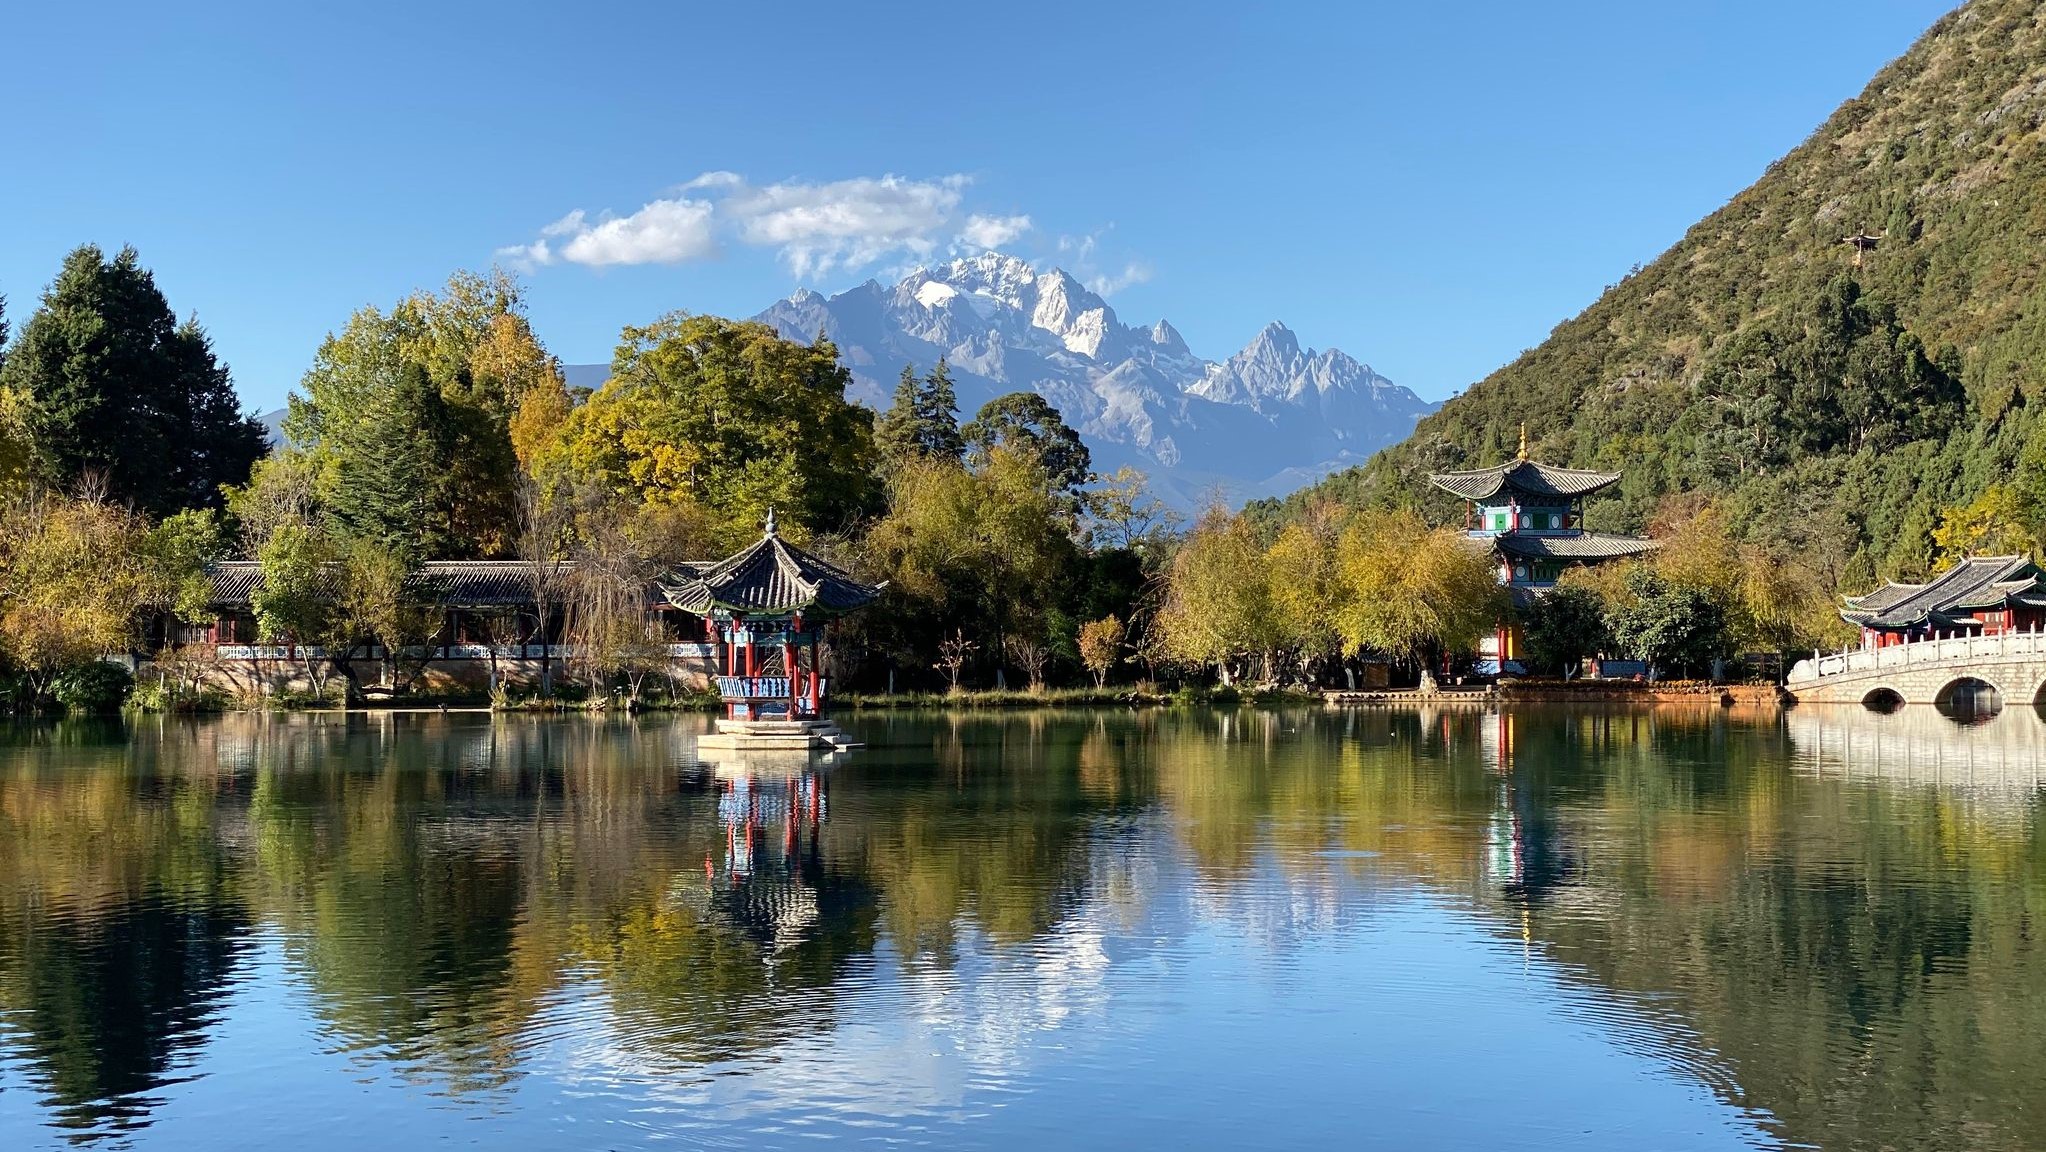 Lijiang - Yunnan